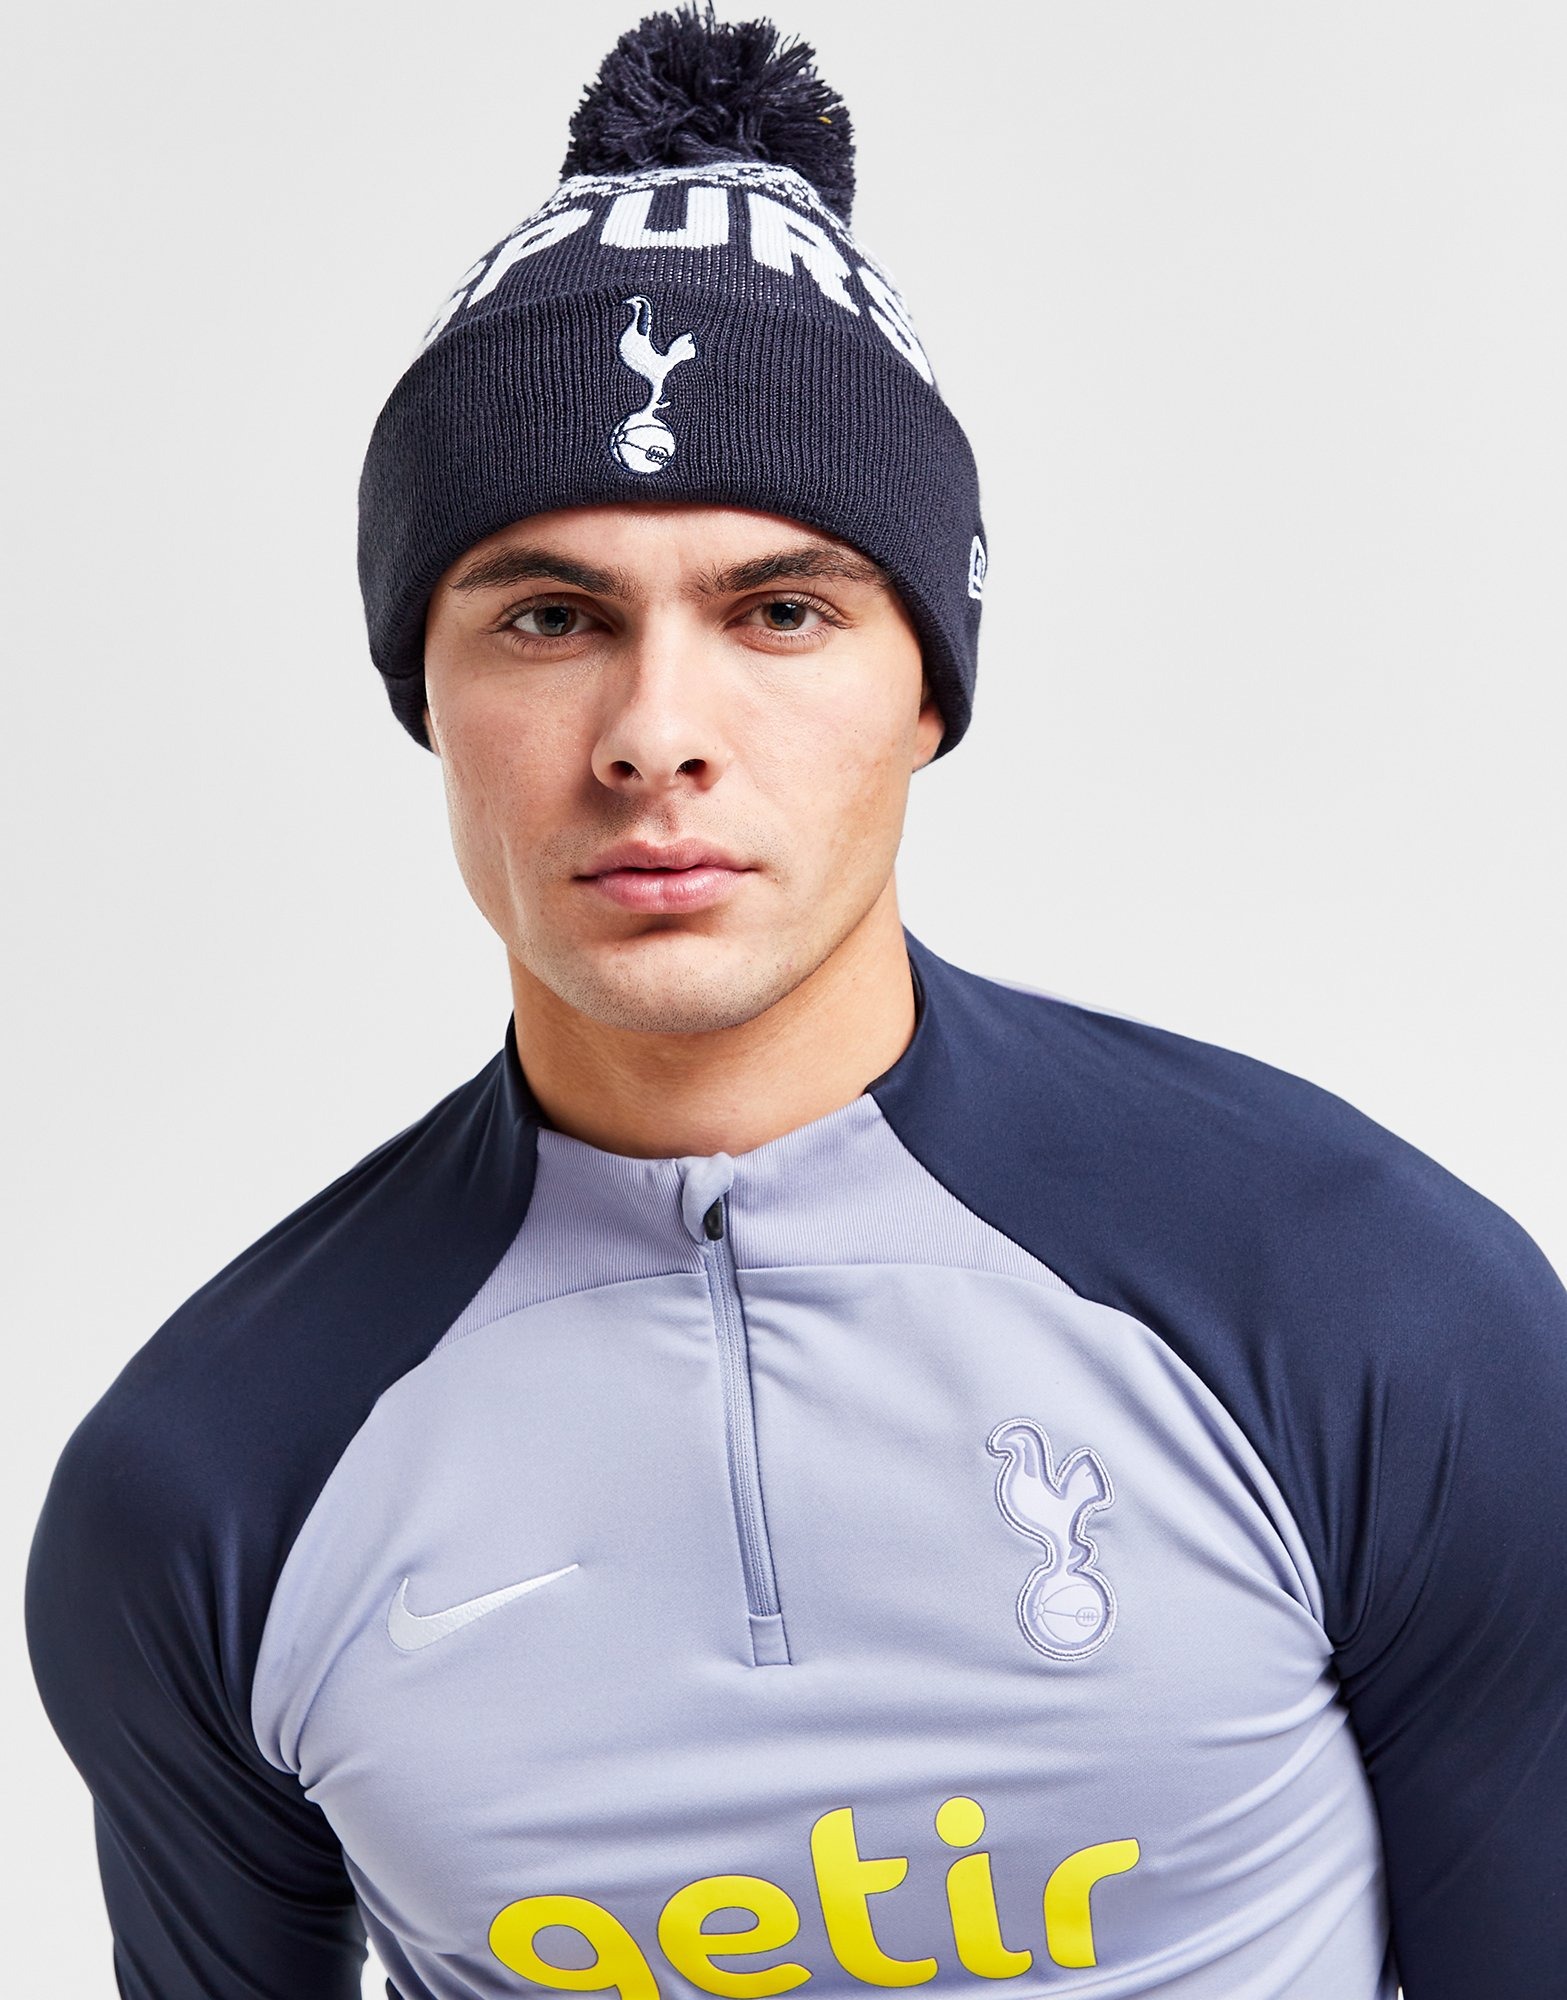 Men's New Era Navy Tottenham Hotspur Retro Short Cuffed Knit Hat